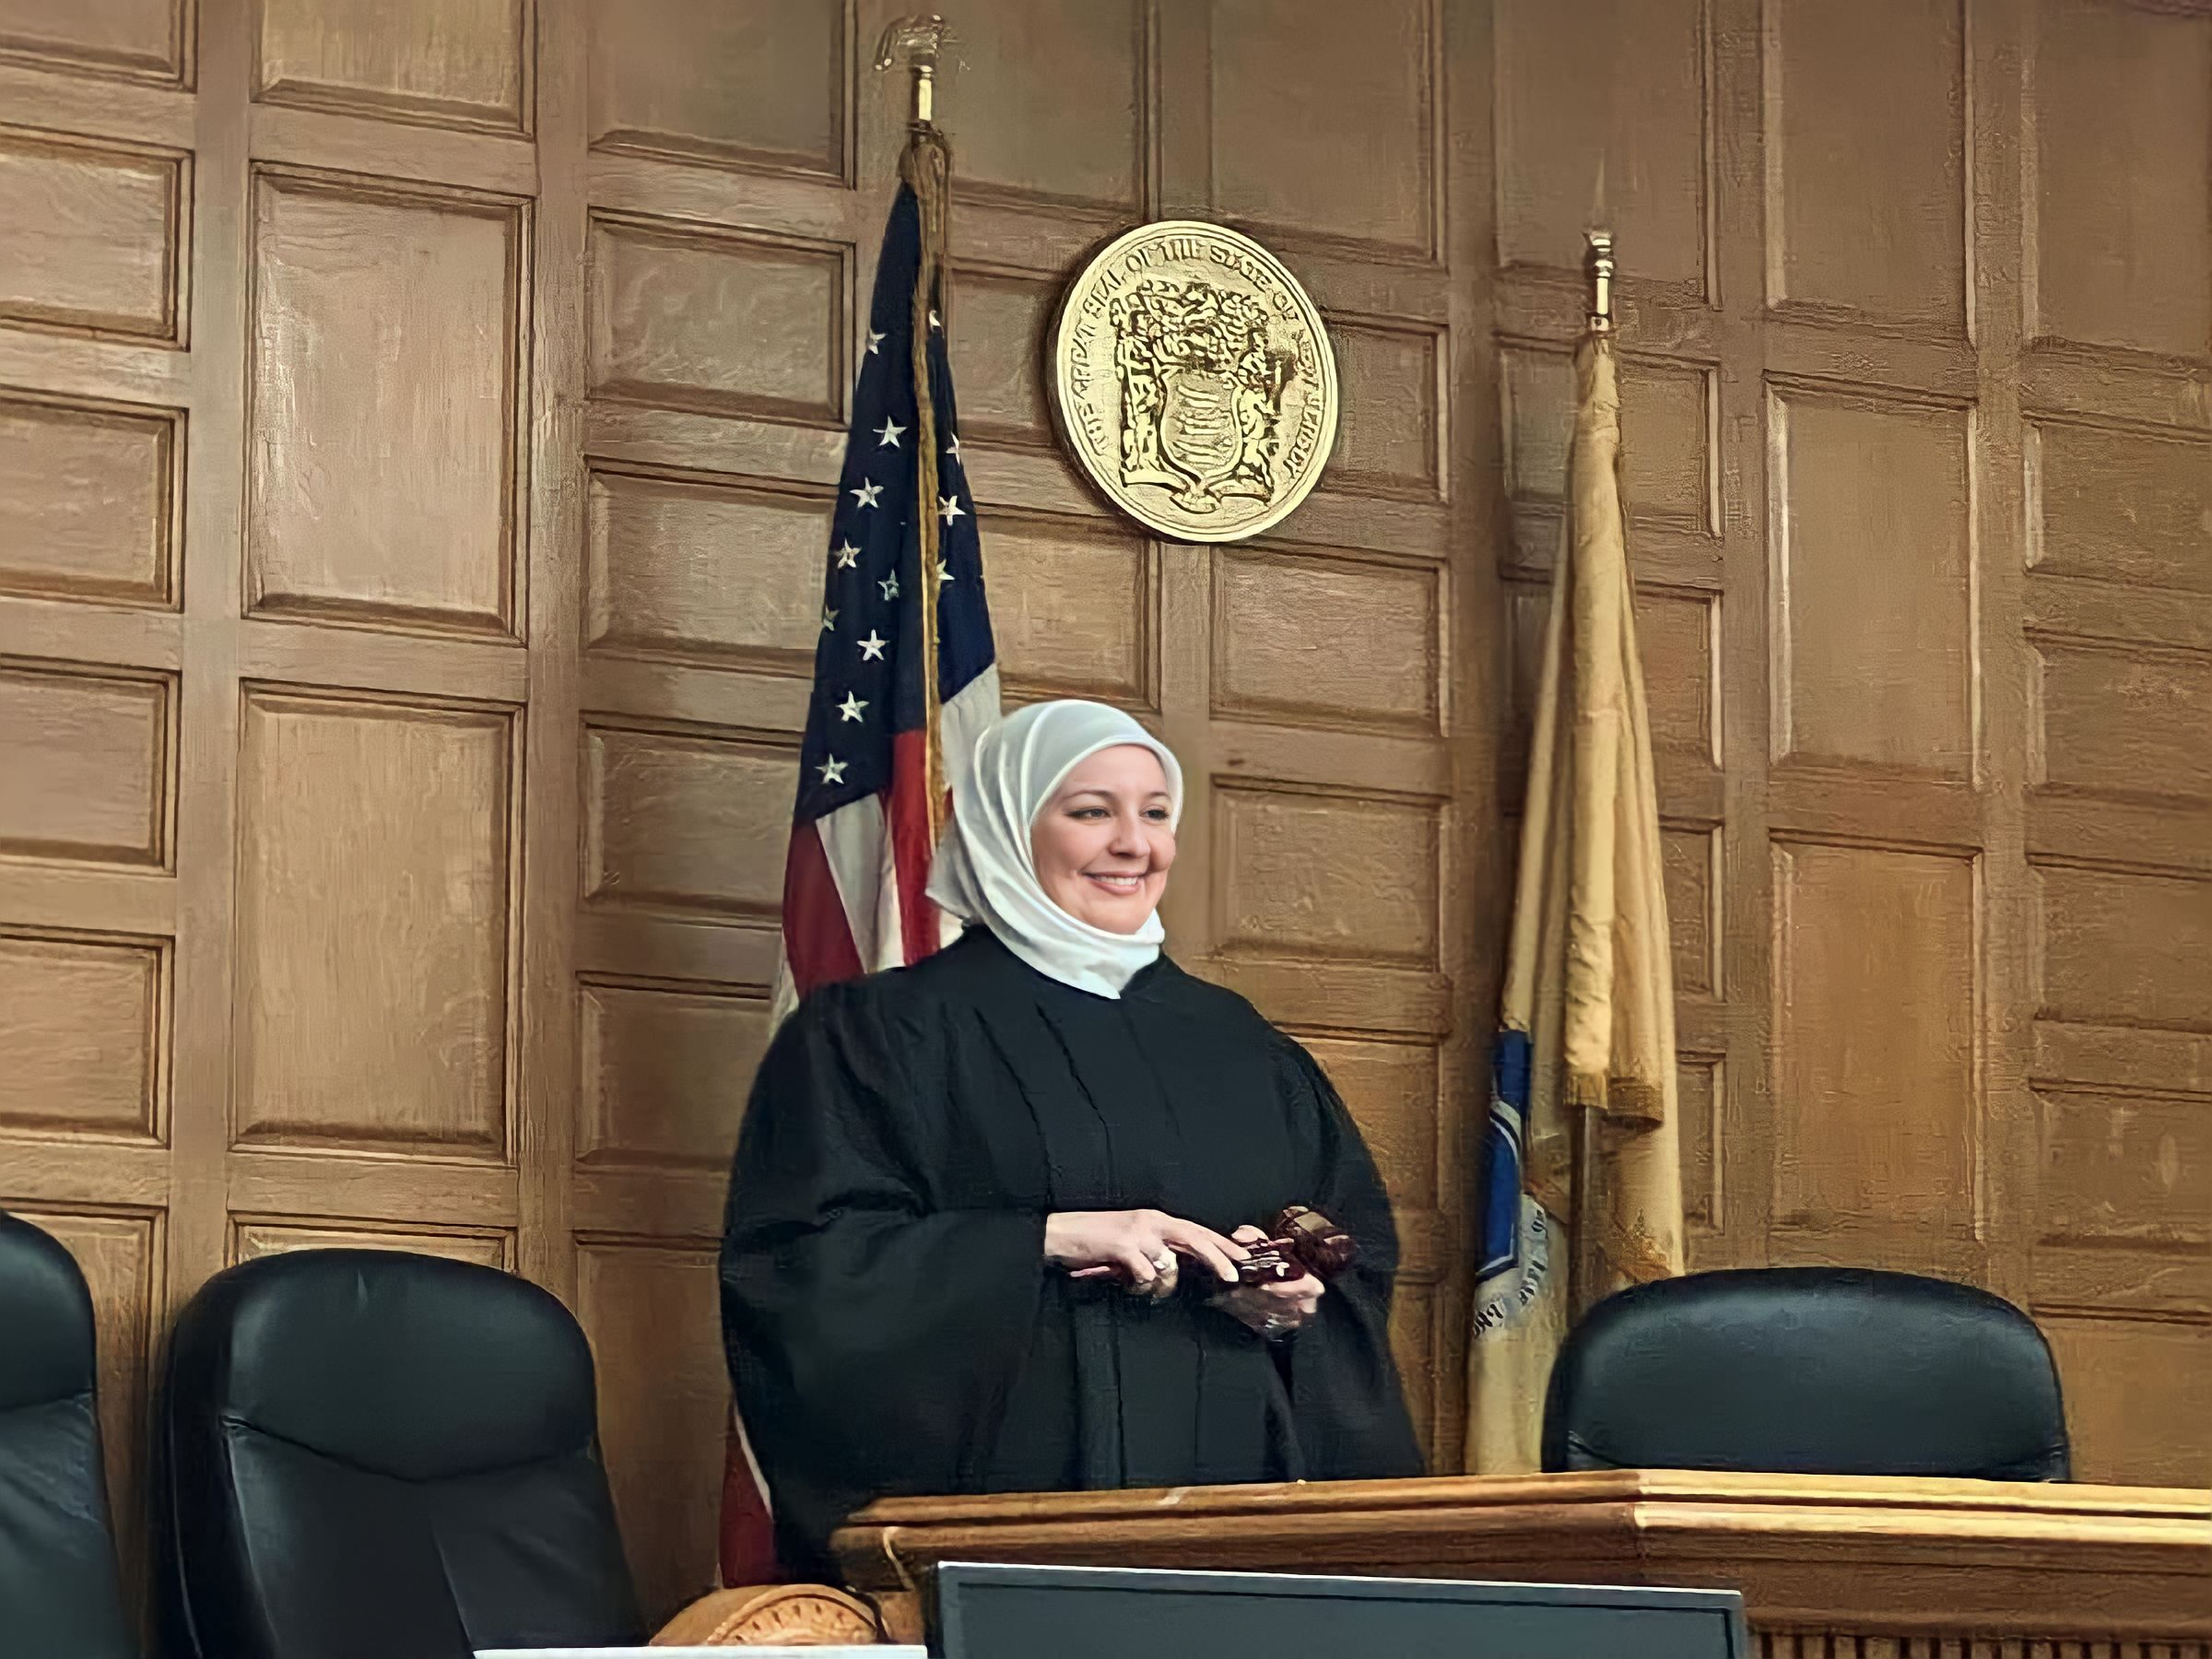 Gjyqtarja e parë me mbulesë në SHBA, u betua me dorë mbi Kuranin e Shenjtë